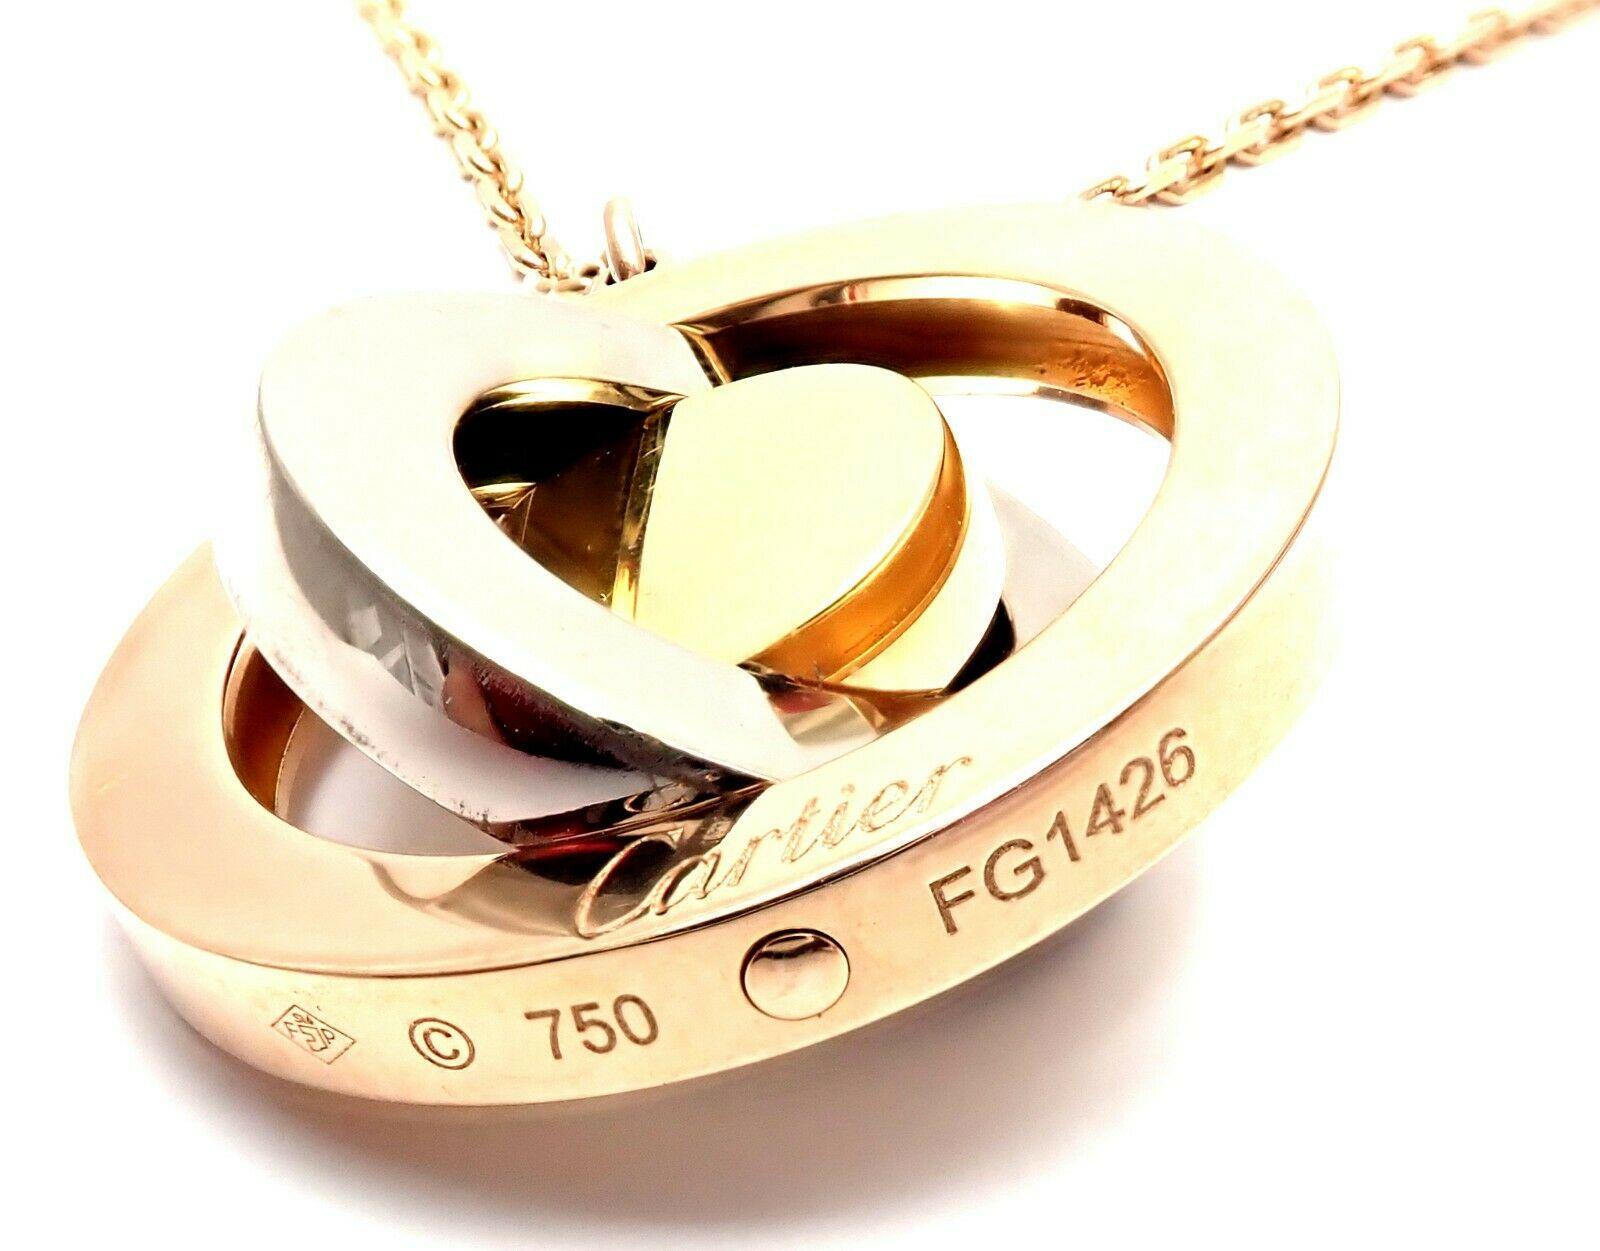 18k Tri-Color Gold Movable Disc Pendant Necklace by Cartier.  
Details:  
Pendant: Pendant : 22mm
Chain: 16